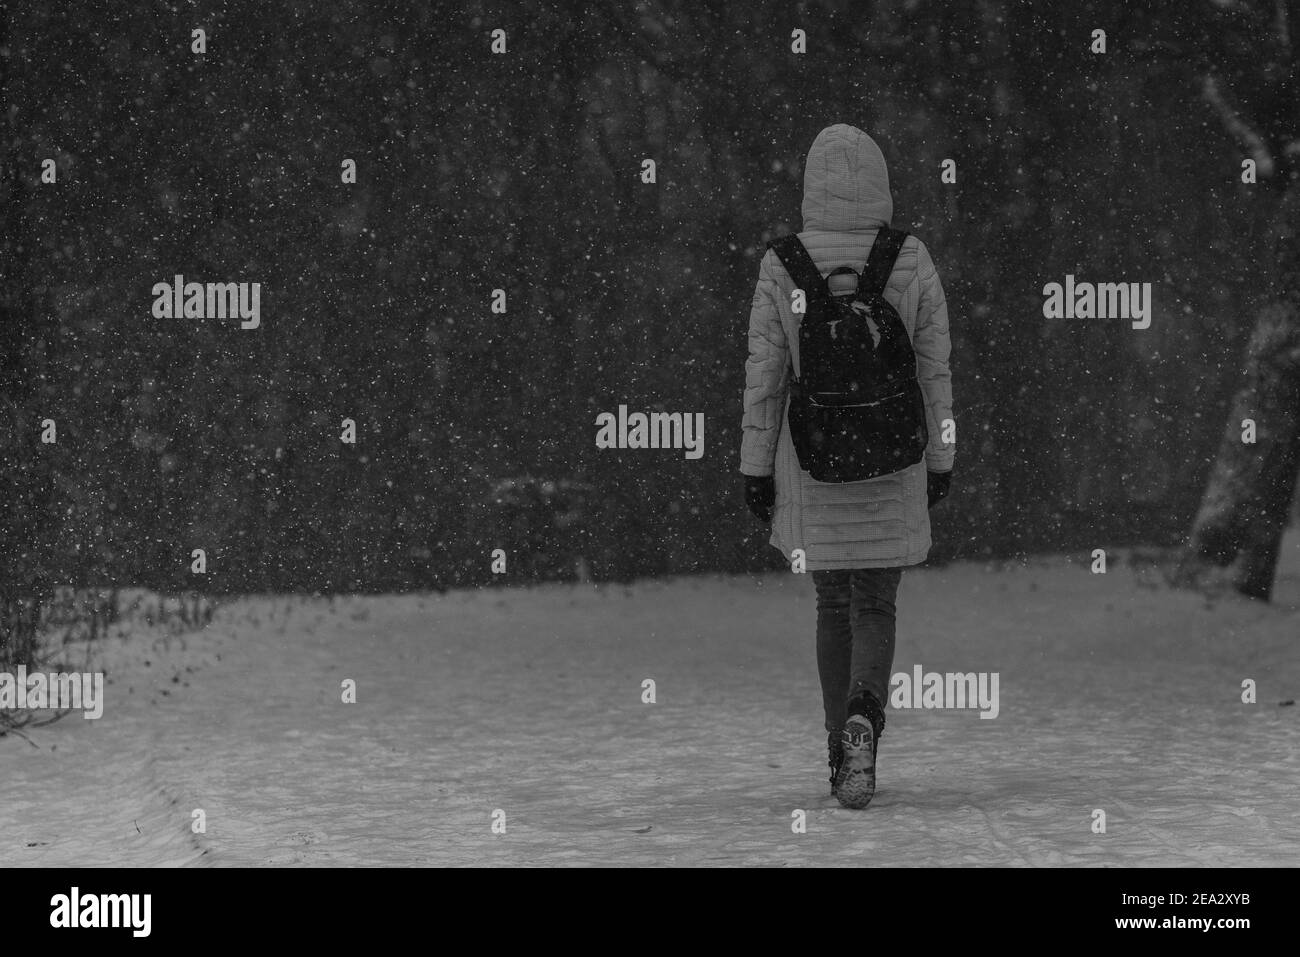 Une jeune femme marchant dans la tempête de neige, photographiée de l'arrière-plan, UNE femme marchant dans la neige, une forêt en arrière-plan, une photo en noir et blanc Banque D'Images